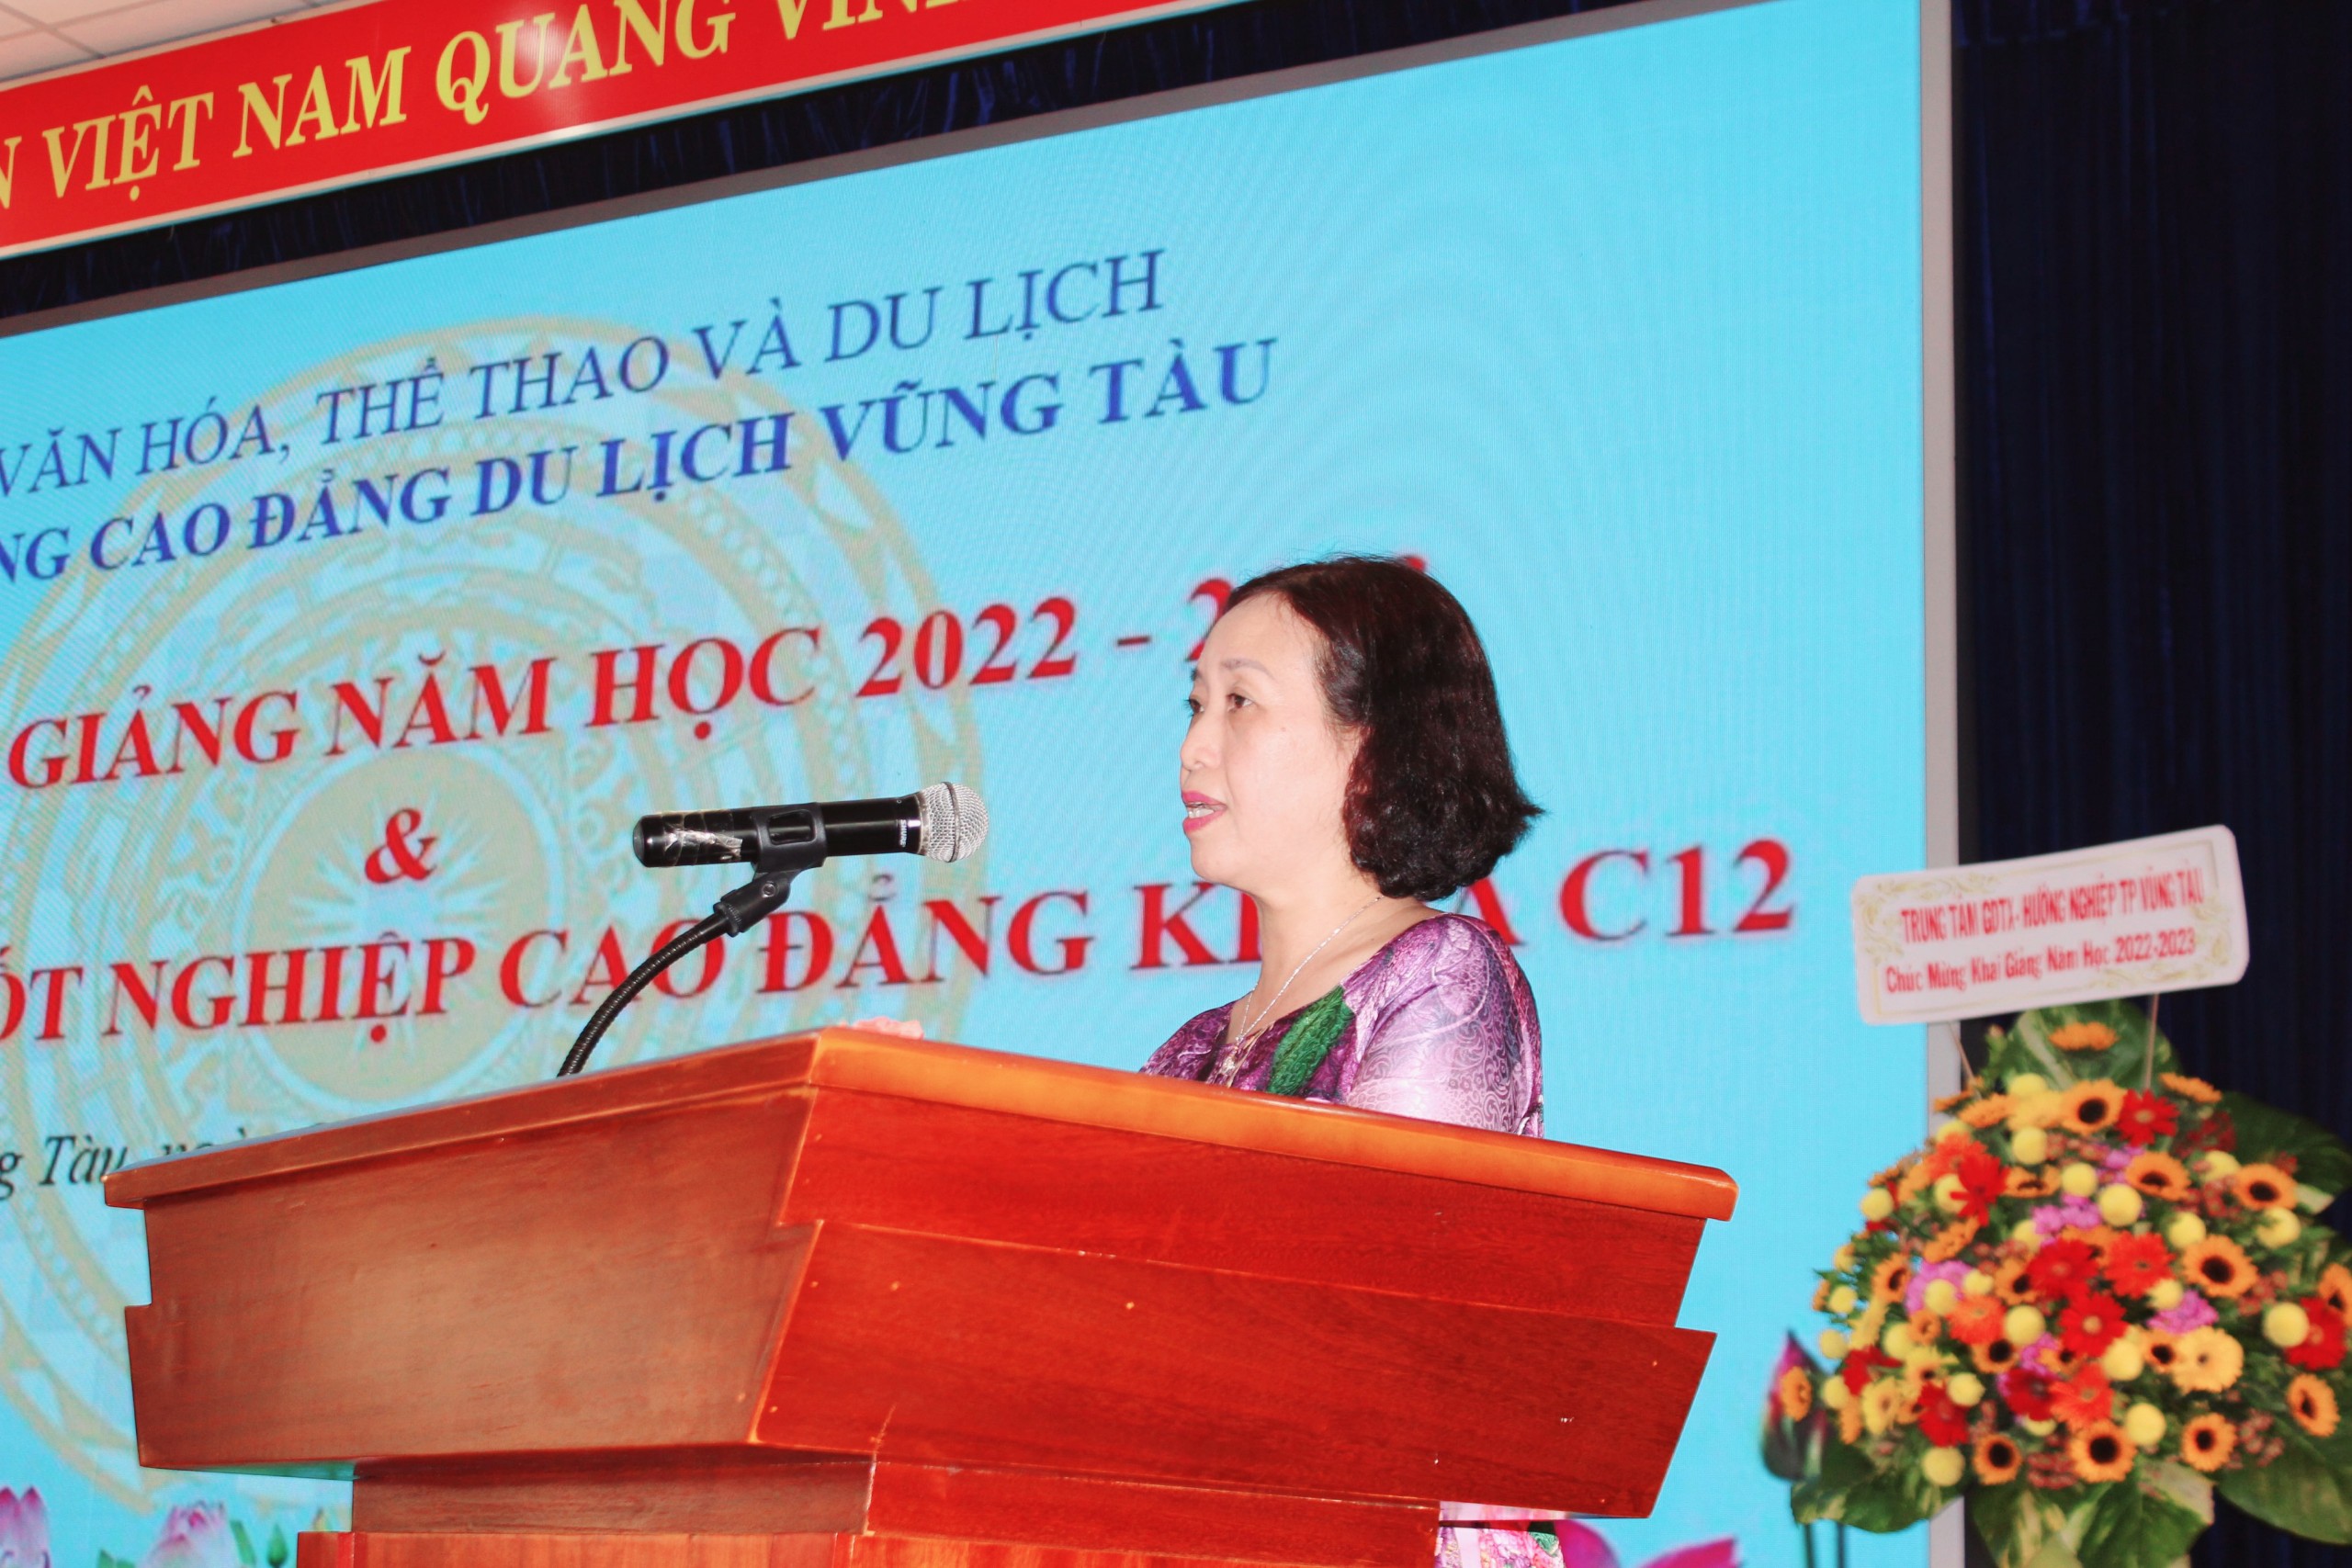 Bà Đinh Bích Diệp, Hiệu trưởng nhà trường phát biểu tại lễ khai giảng năm học 2022-2023.